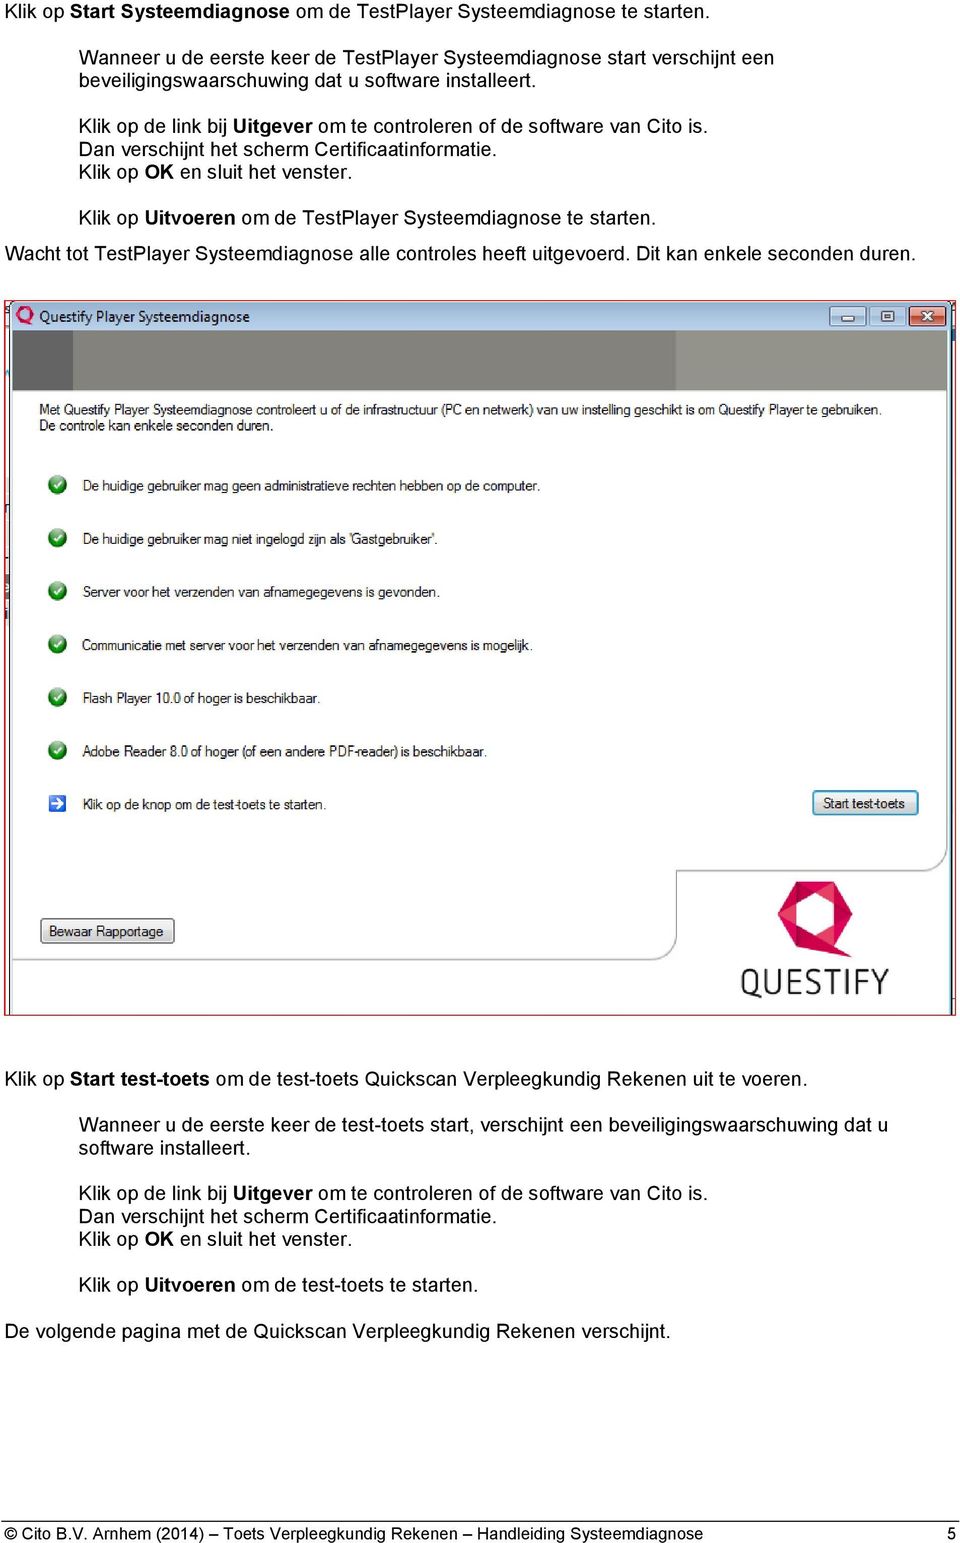 Klik op de link bij Uitgever om te controleren of de software van Cito is. Dan verschijnt het scherm Certificaatinformatie. Klik op OK en sluit het venster.